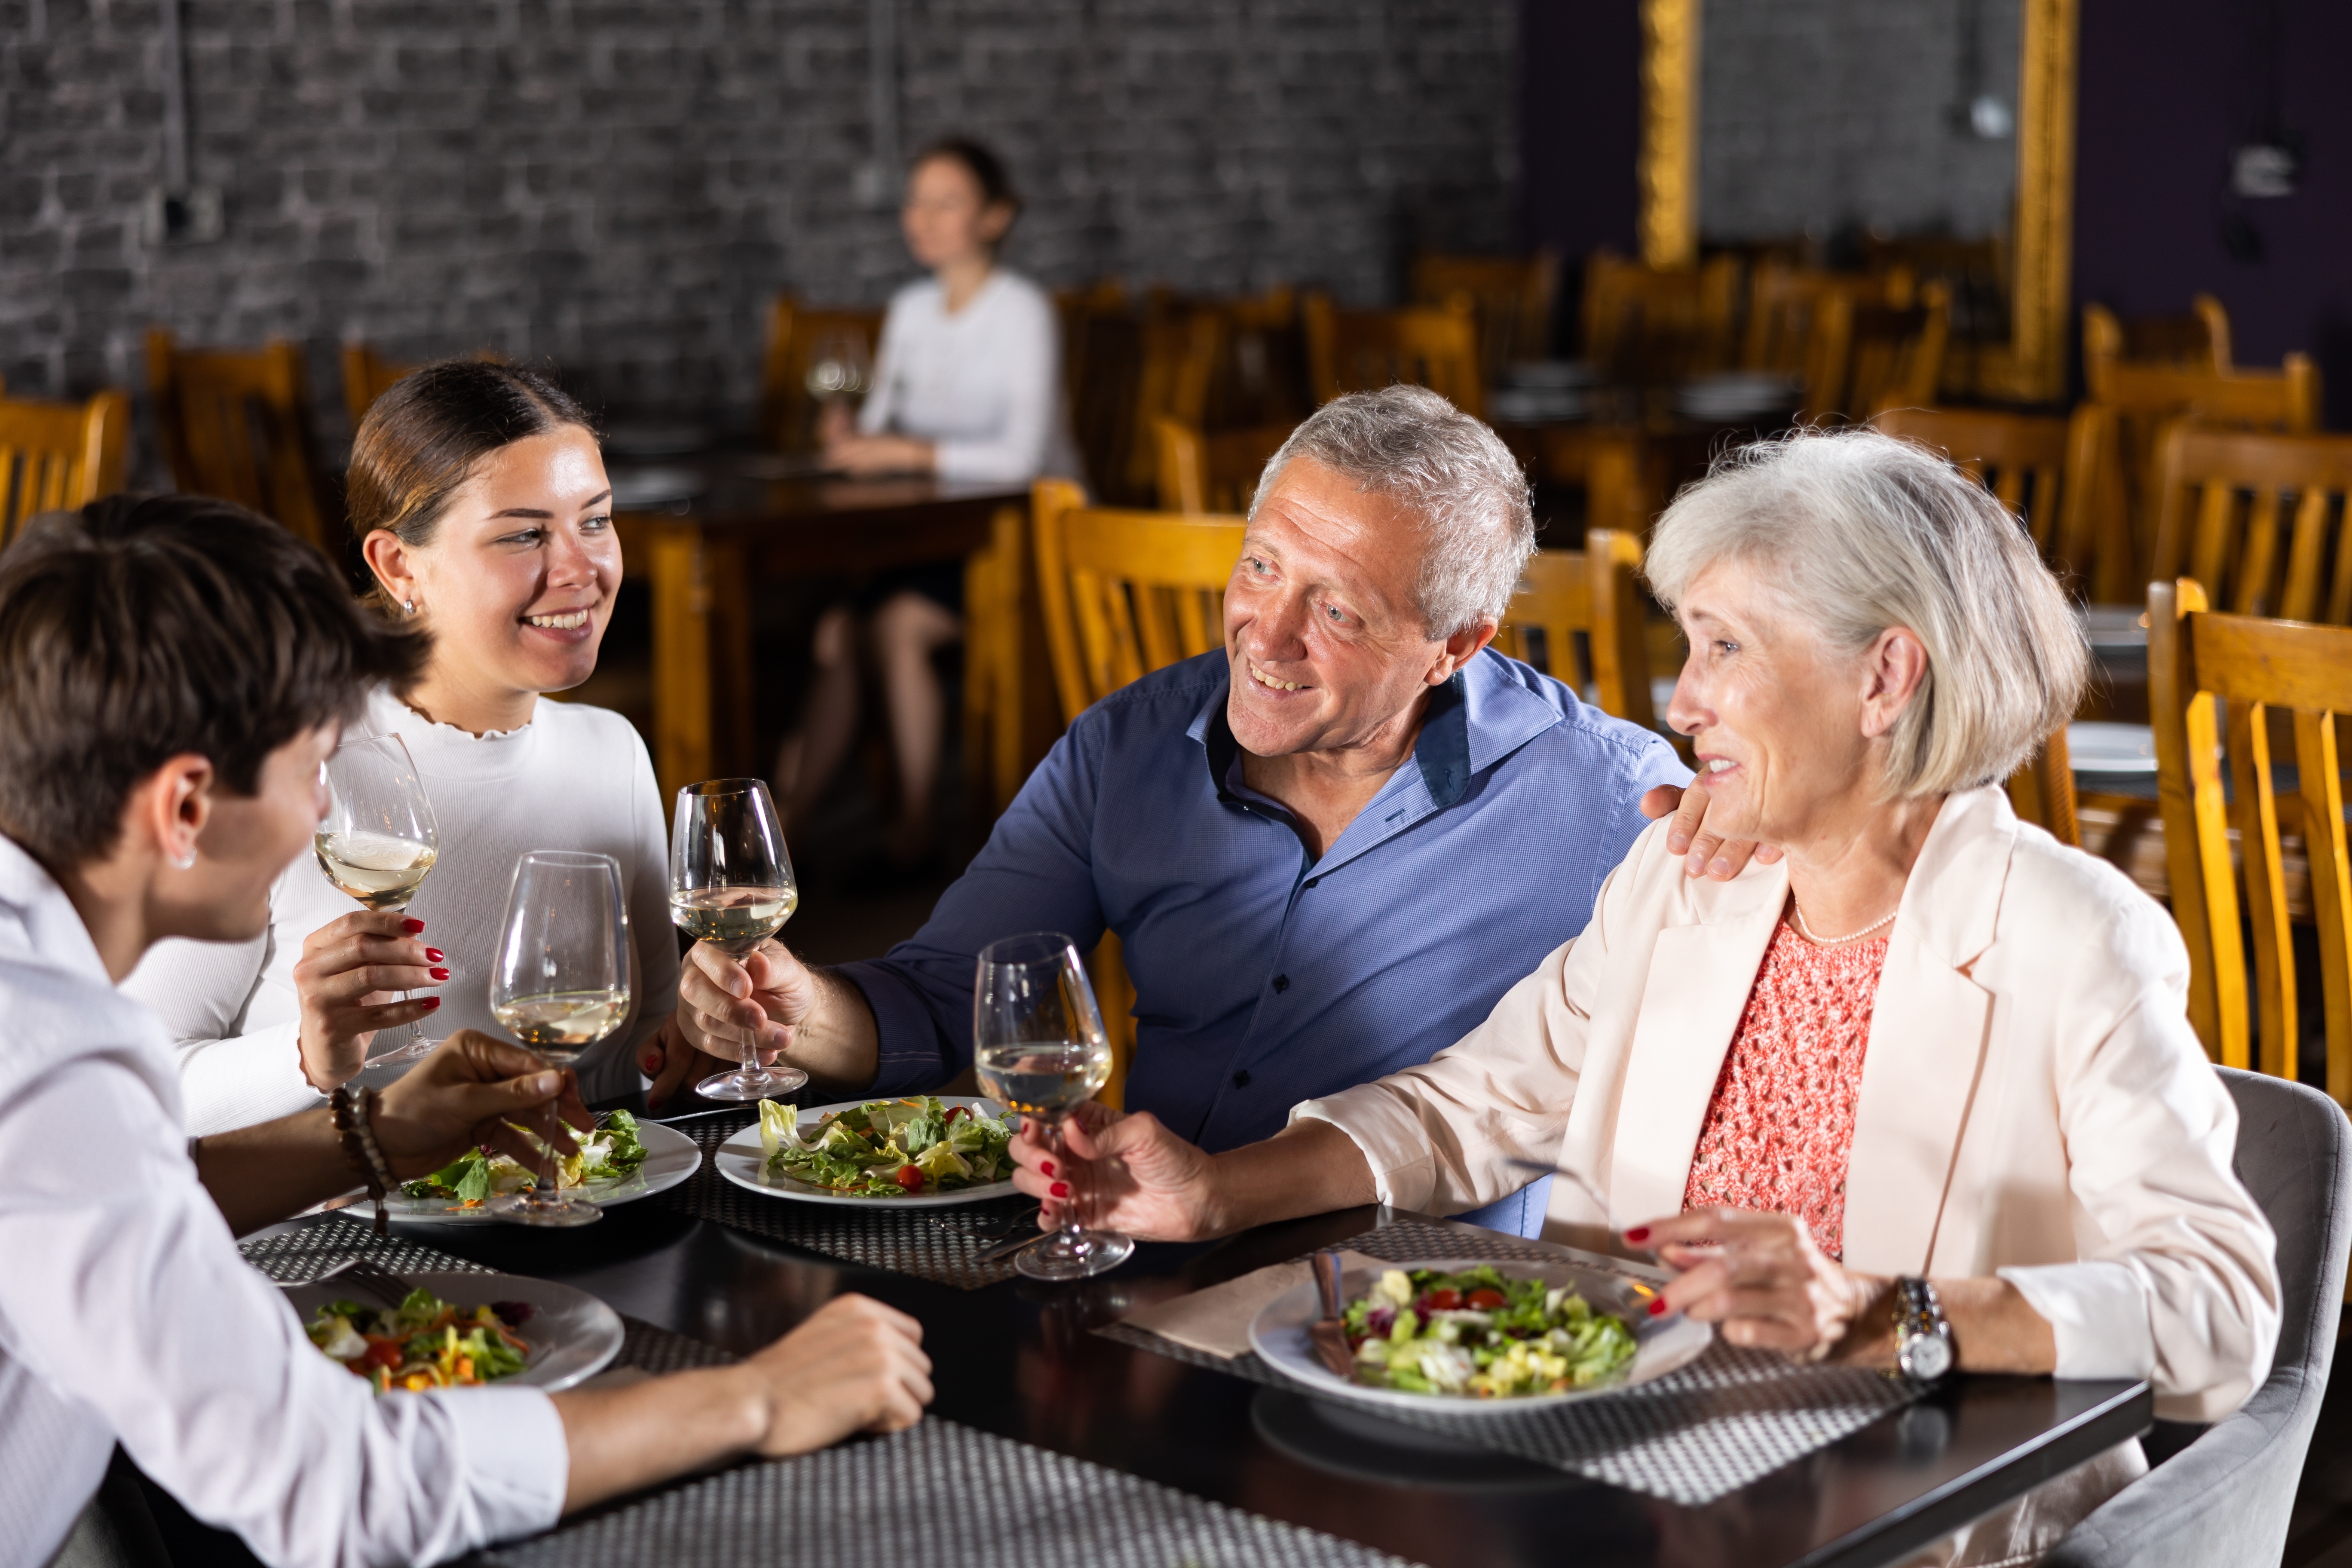 A family having dinner | Source: Shutterstock